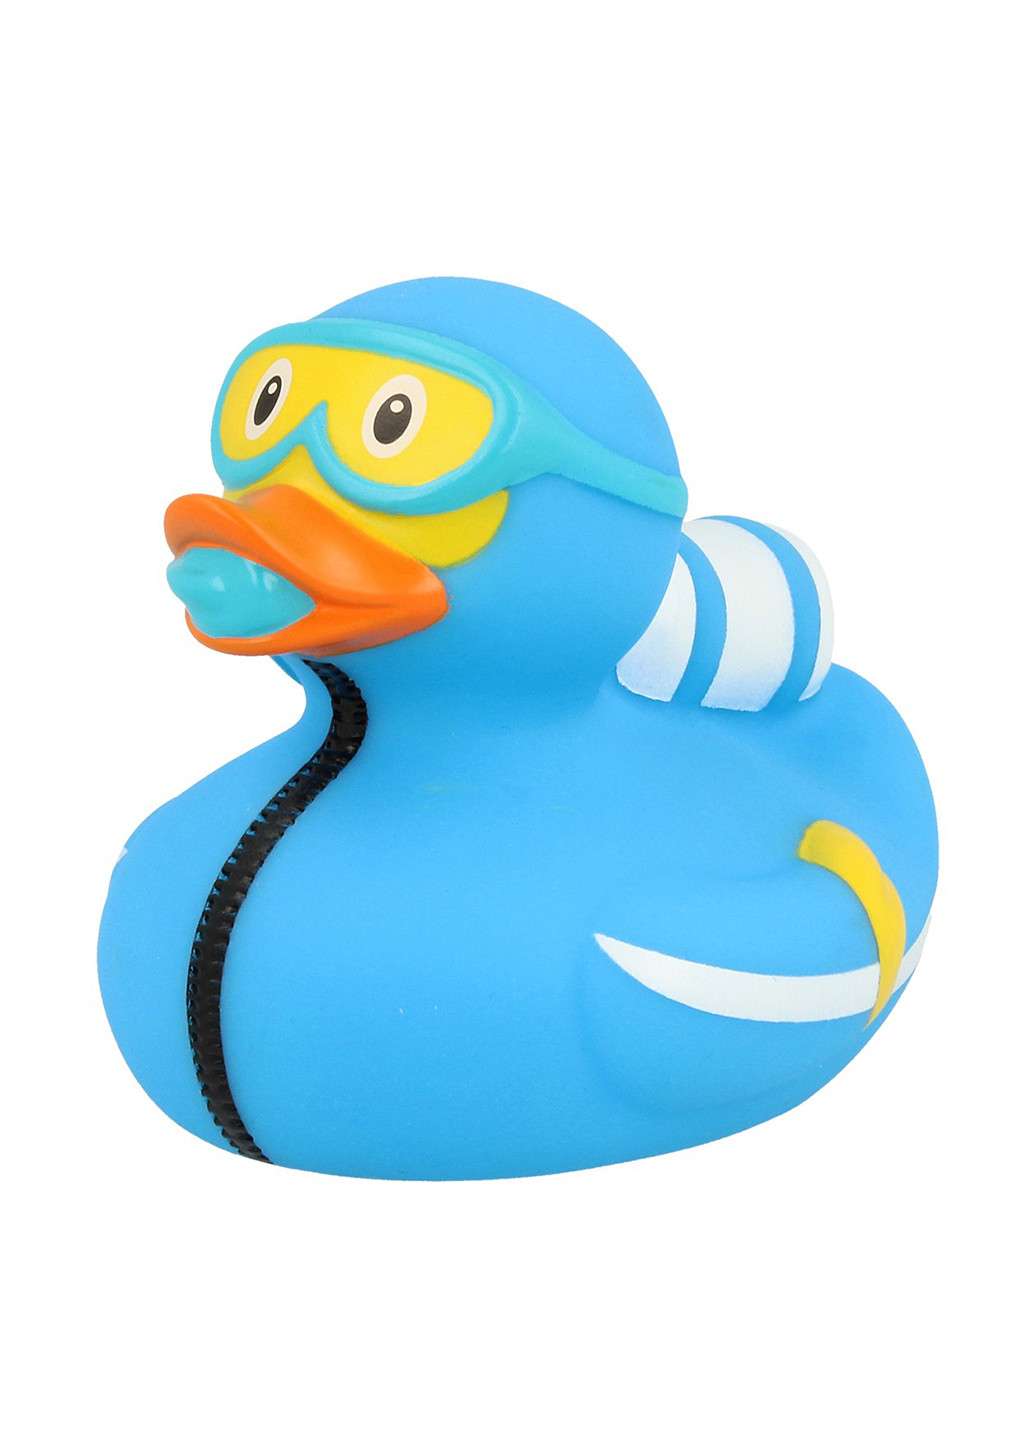 Игрушка для купания Утка Аквалангист, 8,5x8,5x7,5 см Funny Ducks (250618837)